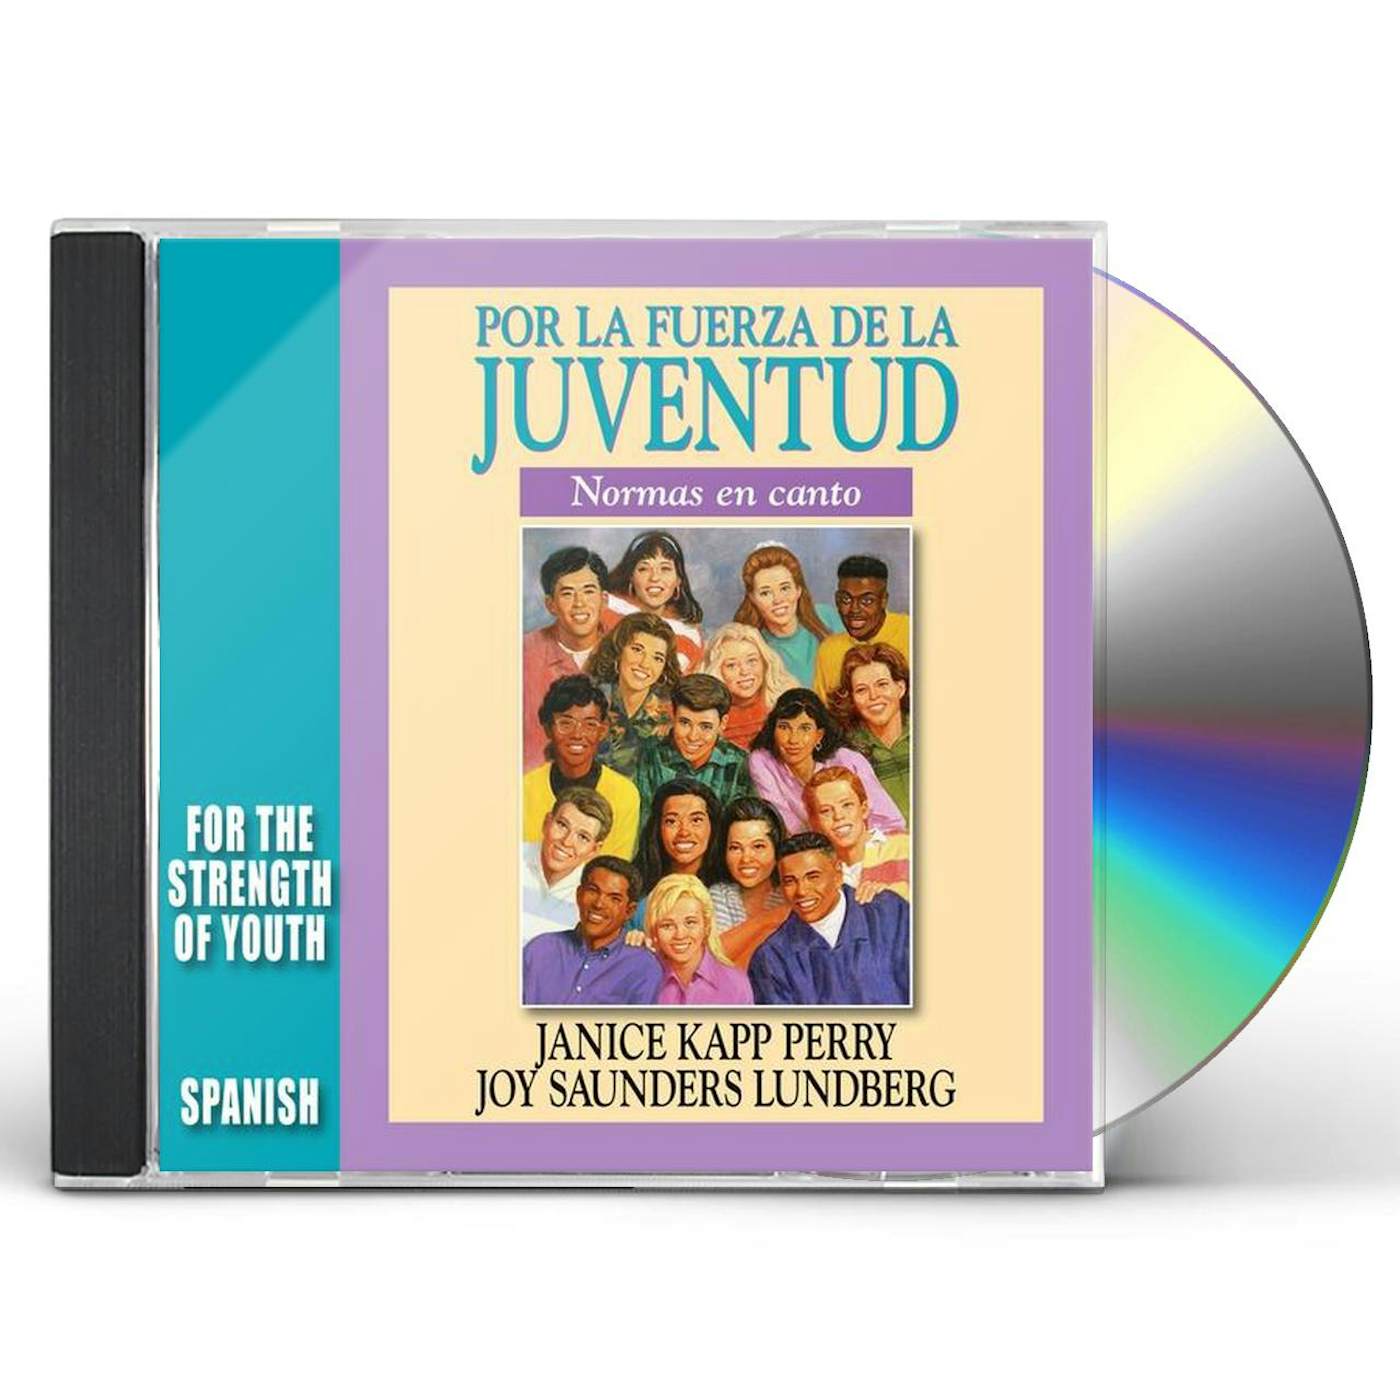 Janice Kapp Perry POR LA FUERZA DE LA JUVENTUD CD